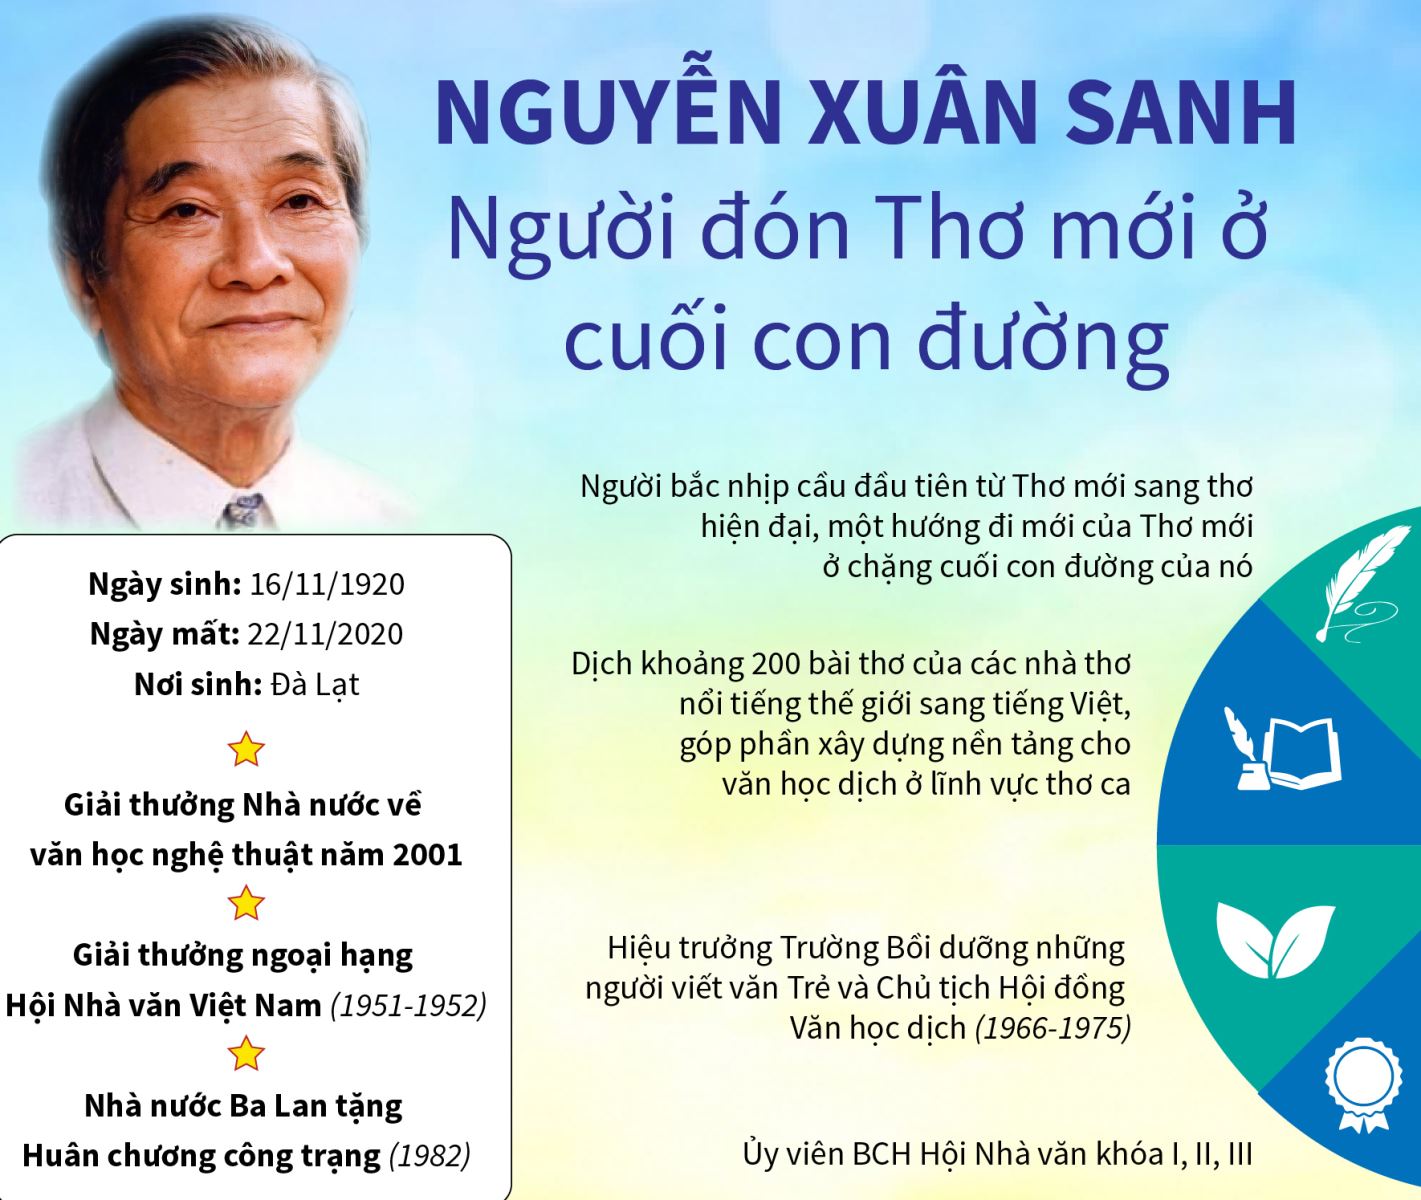 Thơ mới là gì? Khám phá Đặc điểm và Tầm ảnh hưởng của Phong trào Thơ mới Việt Nam